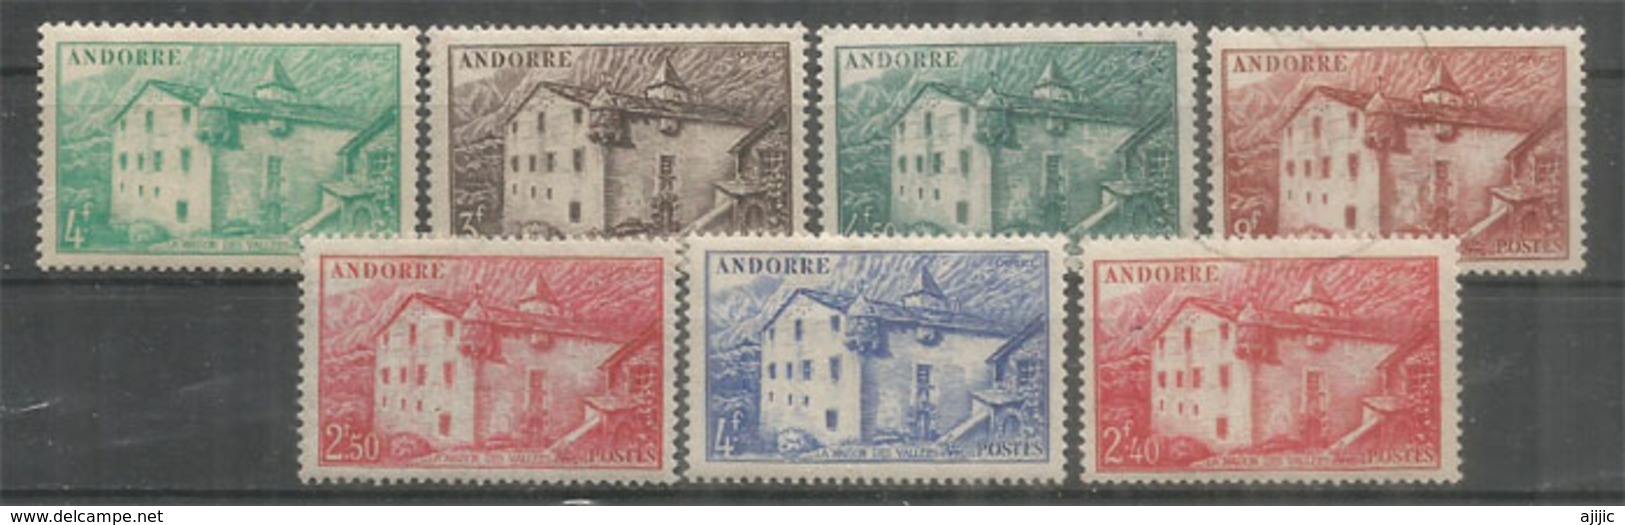 ANDORRE. Eglise Romane De St Jean De Caselles (XI Ième Siècle)  7 Timbres Neufs **  Côte 24.00 € - Unused Stamps